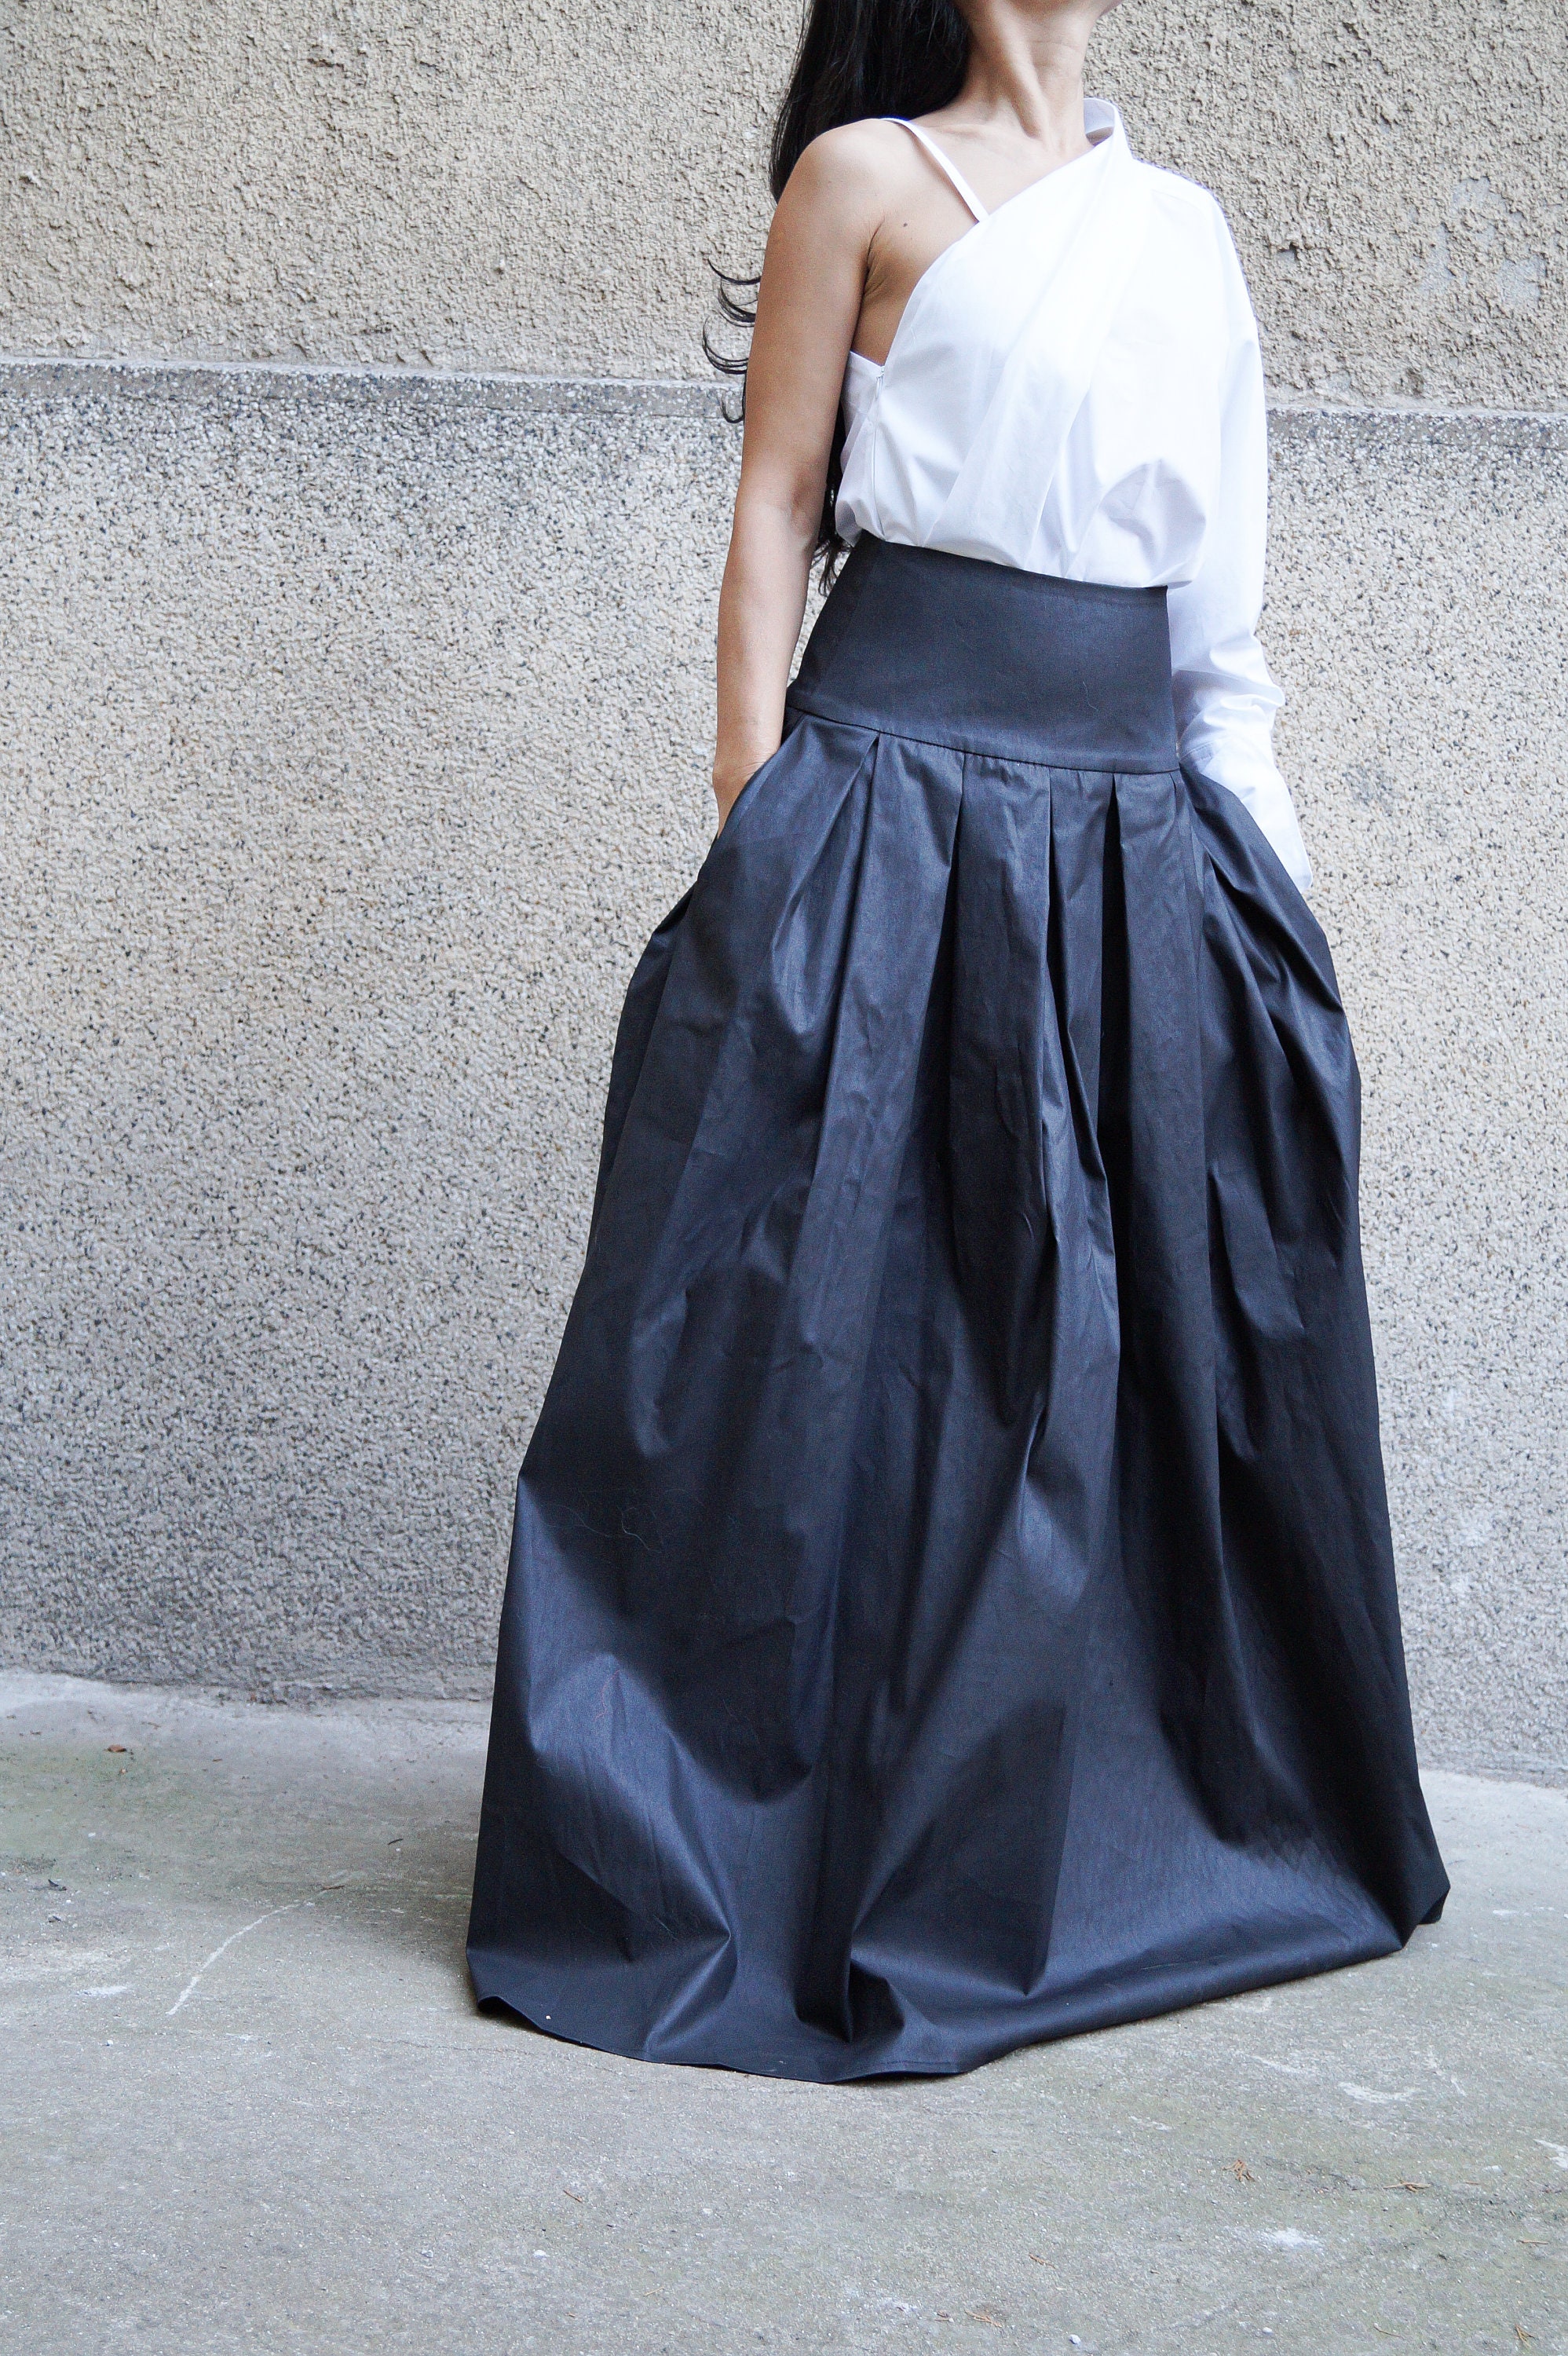 XXL XXXL Skirt/long Skirt/maxi Skirt/lovely Black Skirt/high - Etsy UK